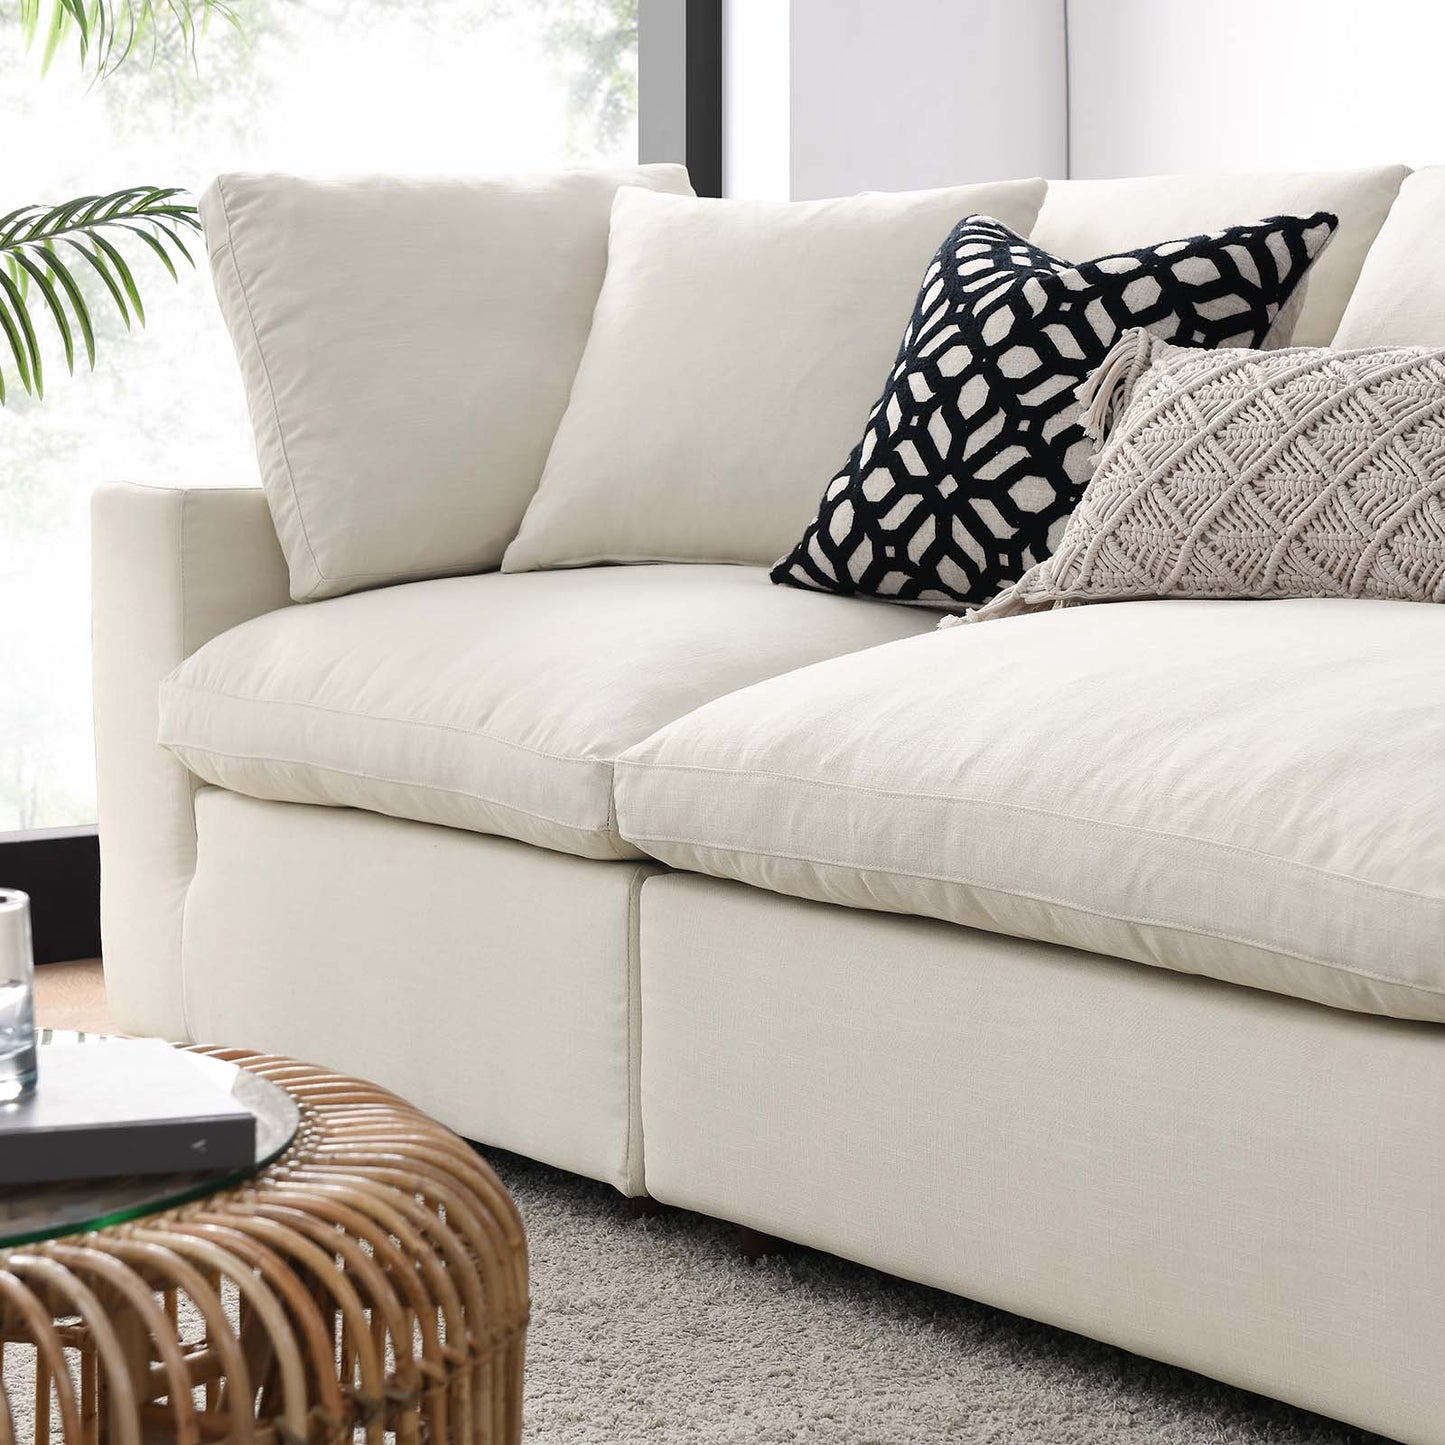 Commix Down Filled Overstuffed 4 Piece Sectional Sofa Set Light Beige EEI-3357-LBG